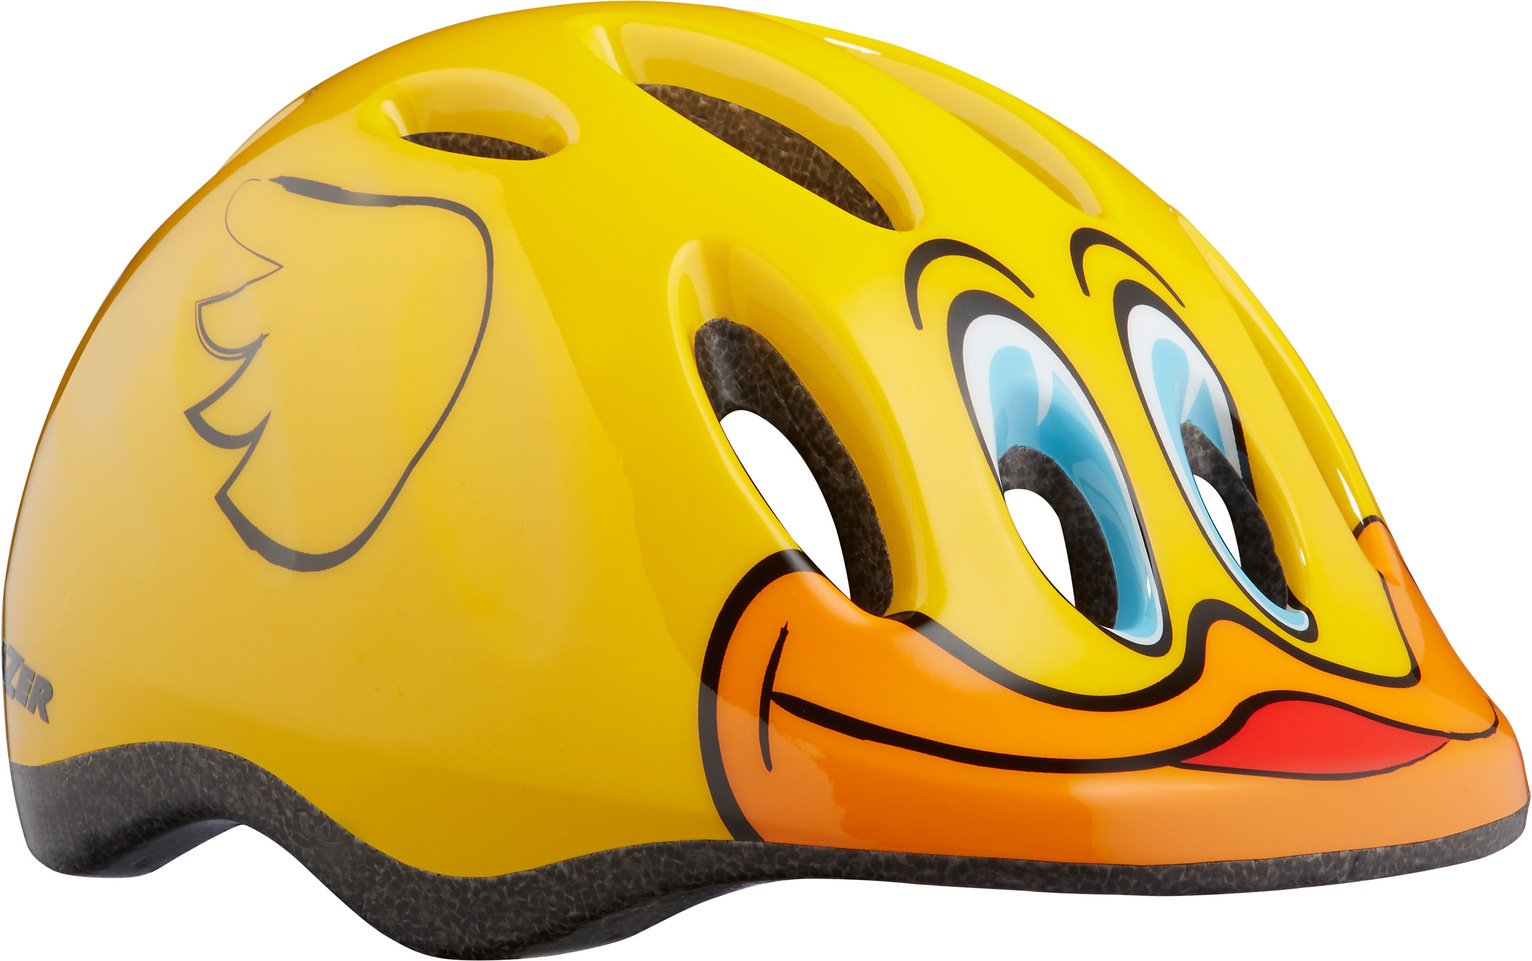 bike duck with helmet